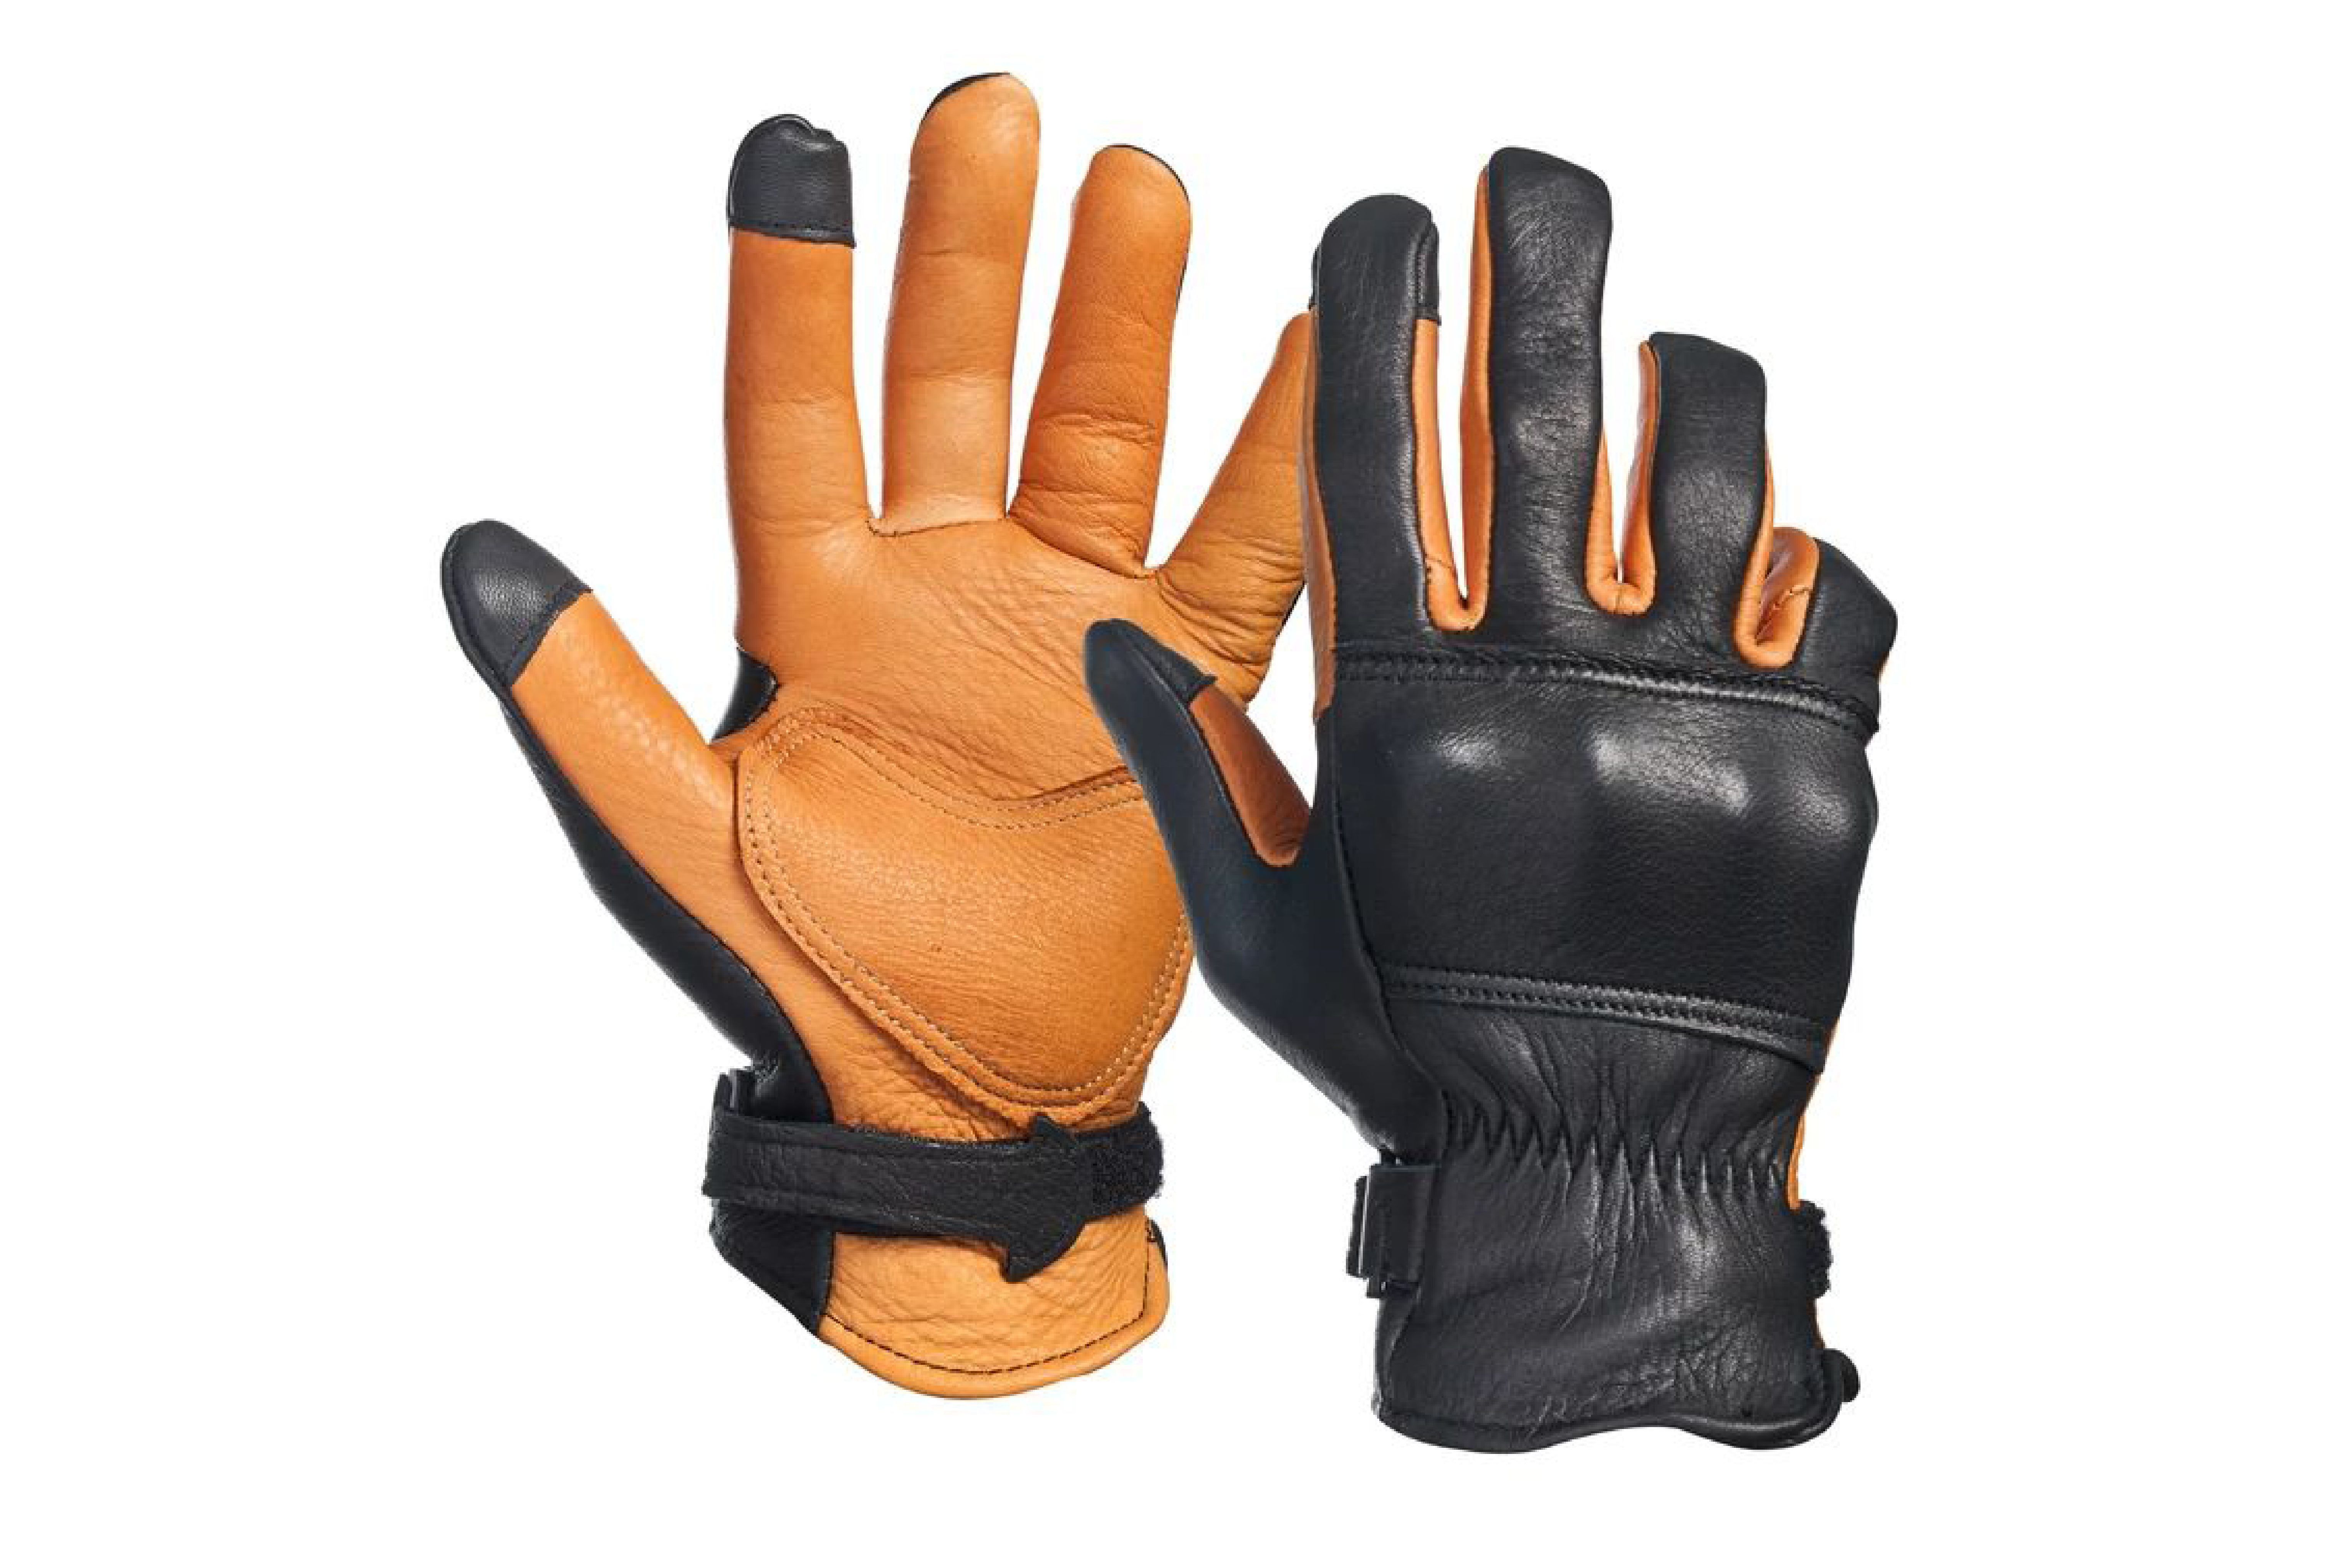  D3 Moto Gloves